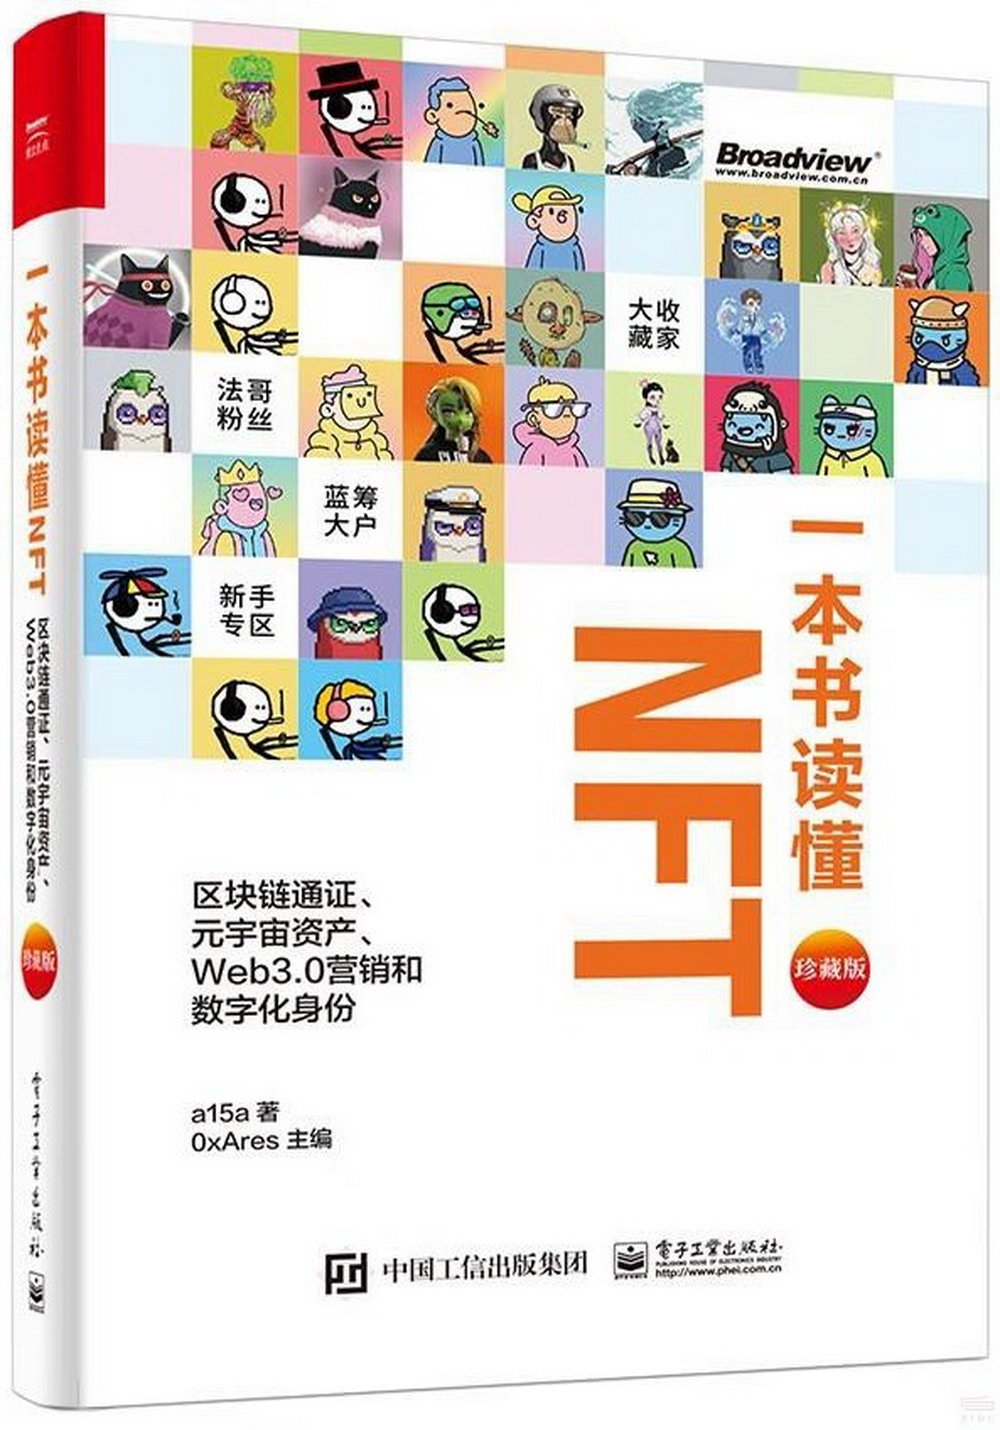 一本書讀懂NFT：區塊鏈通證、元宇宙資產、Web3.0營銷和數字化身份（珍藏版）